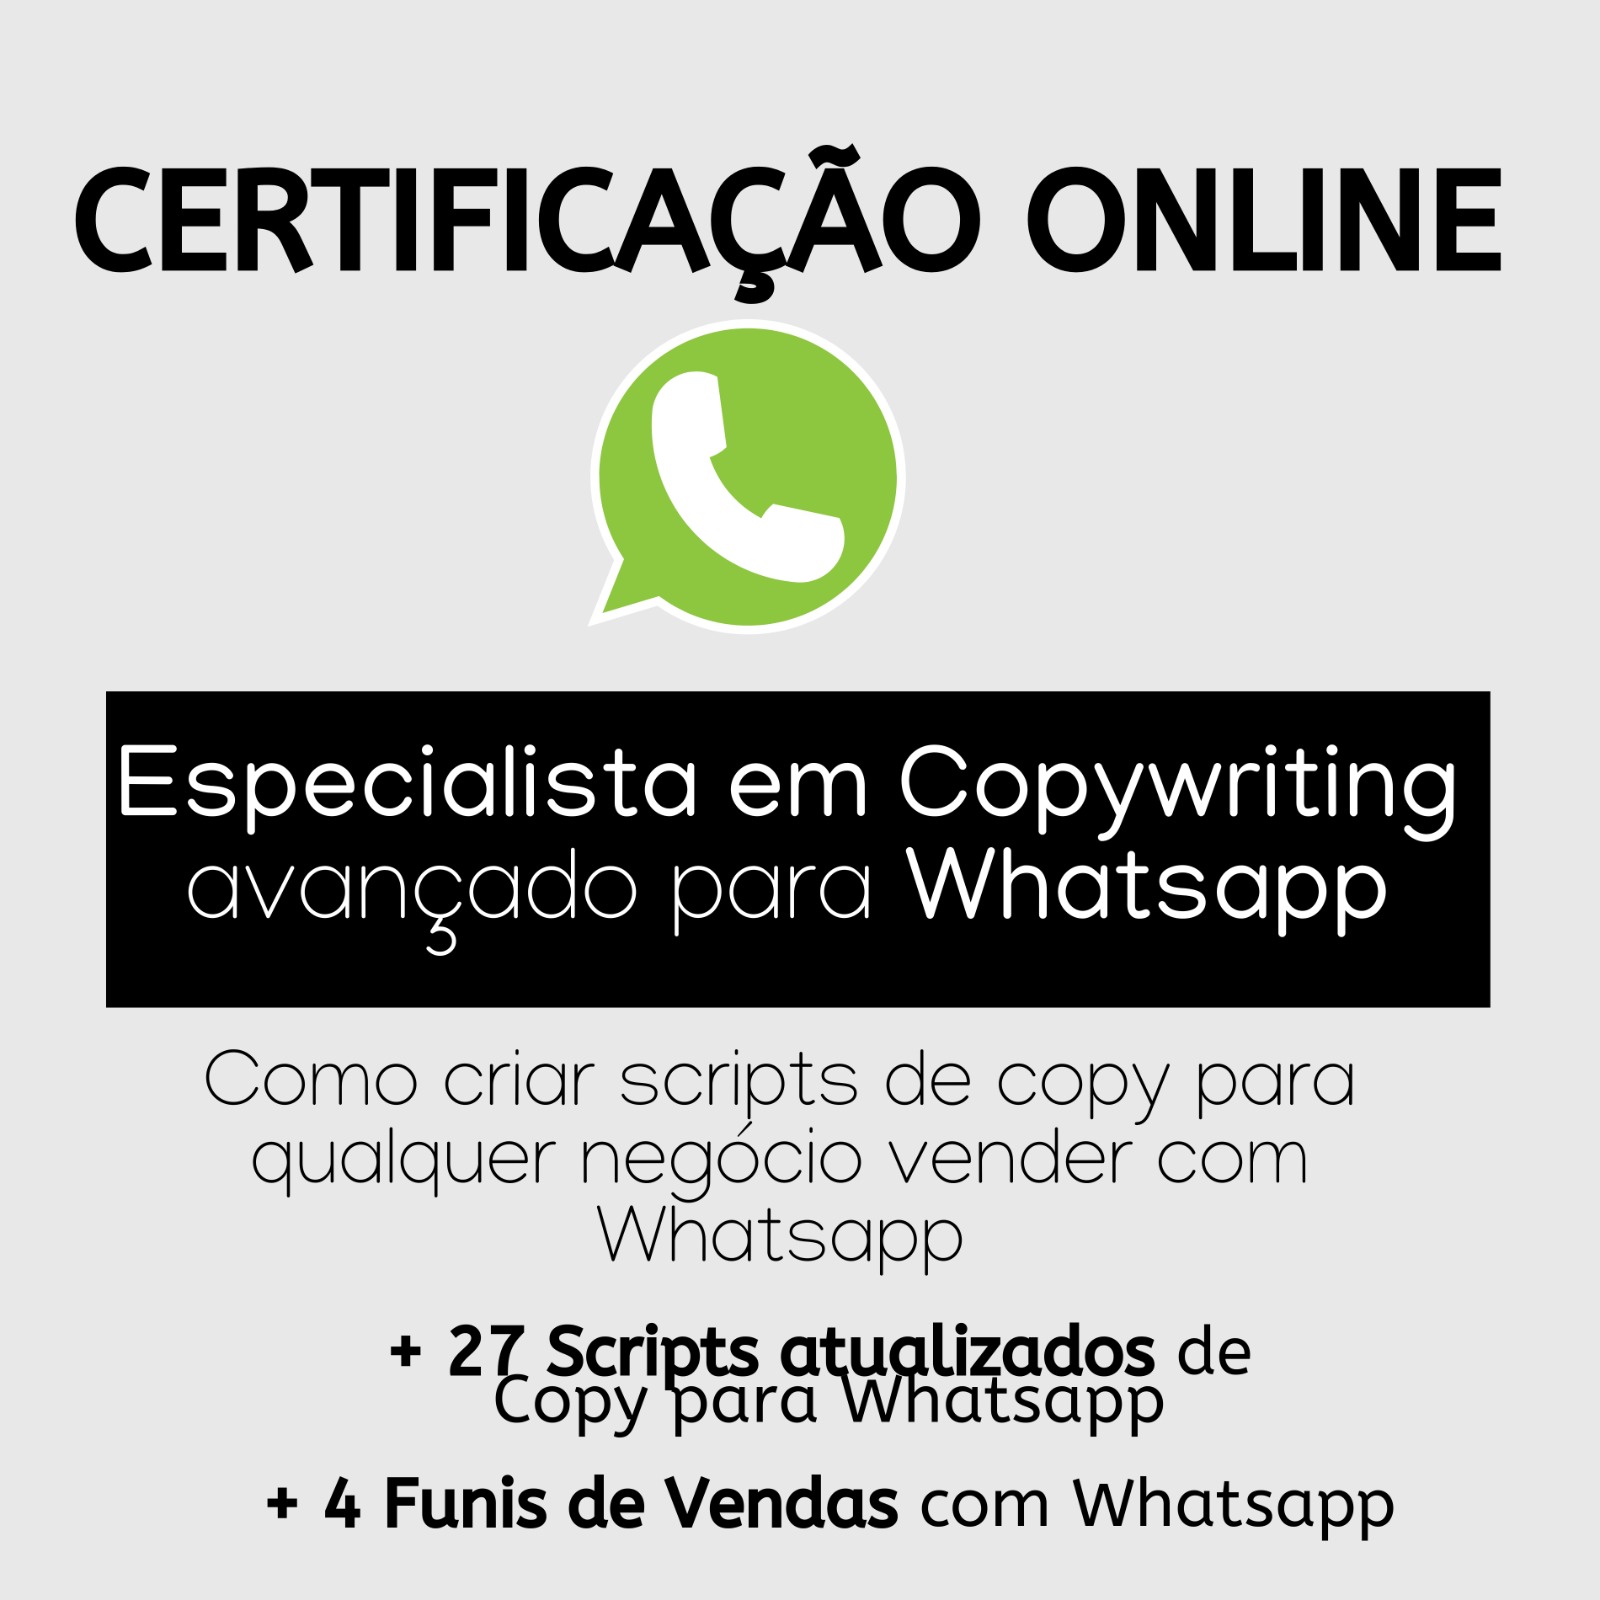 Certificação Especialista em Copywriting Avançado para Whatsapp 206